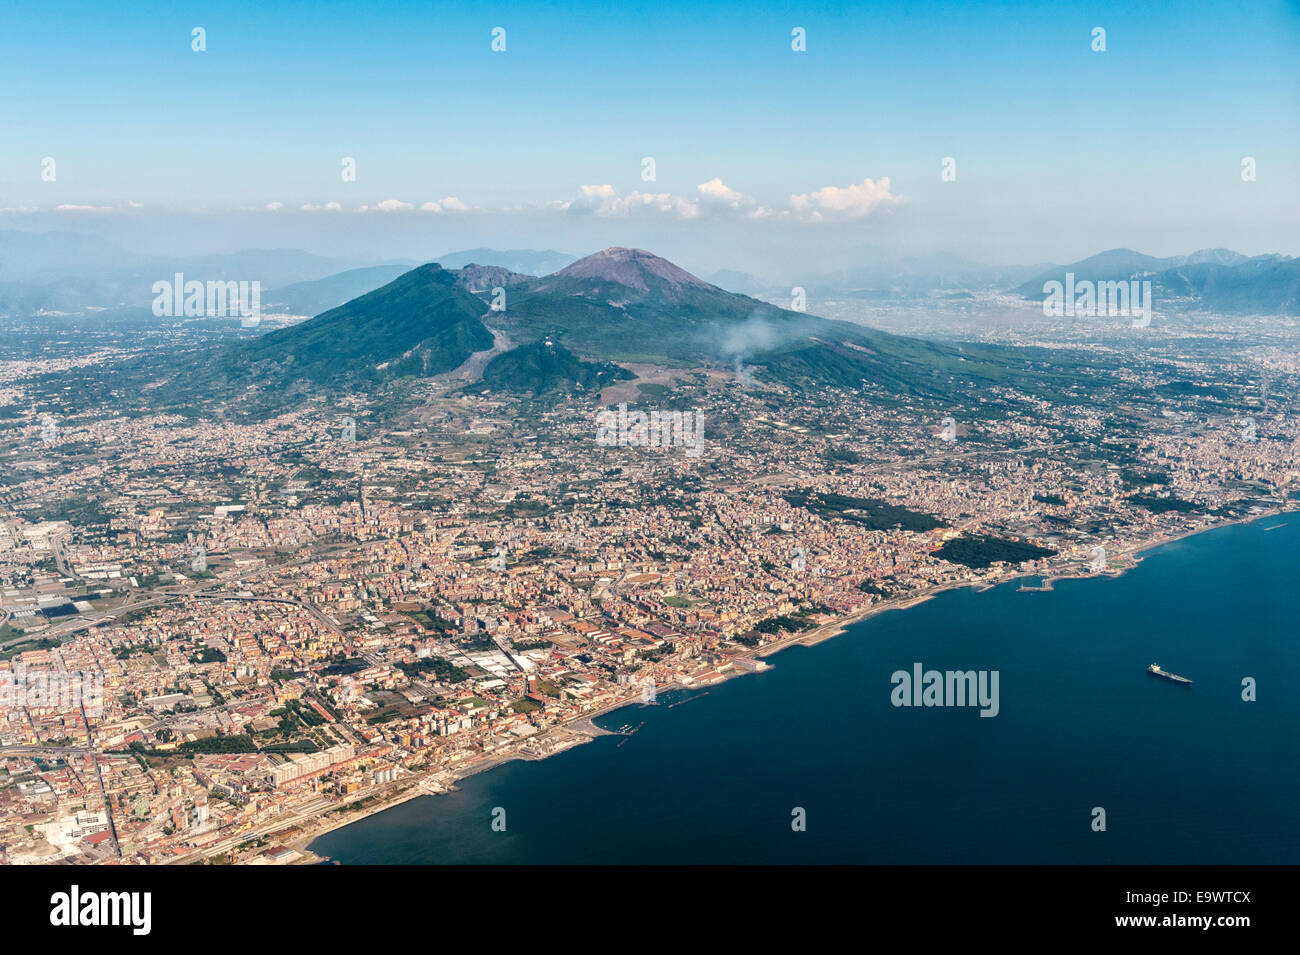 Una vista aerea del vulcano del Vesuvio che sovrasta i sobborghi di Napoli, Campania, Italia meridionale Foto Stock